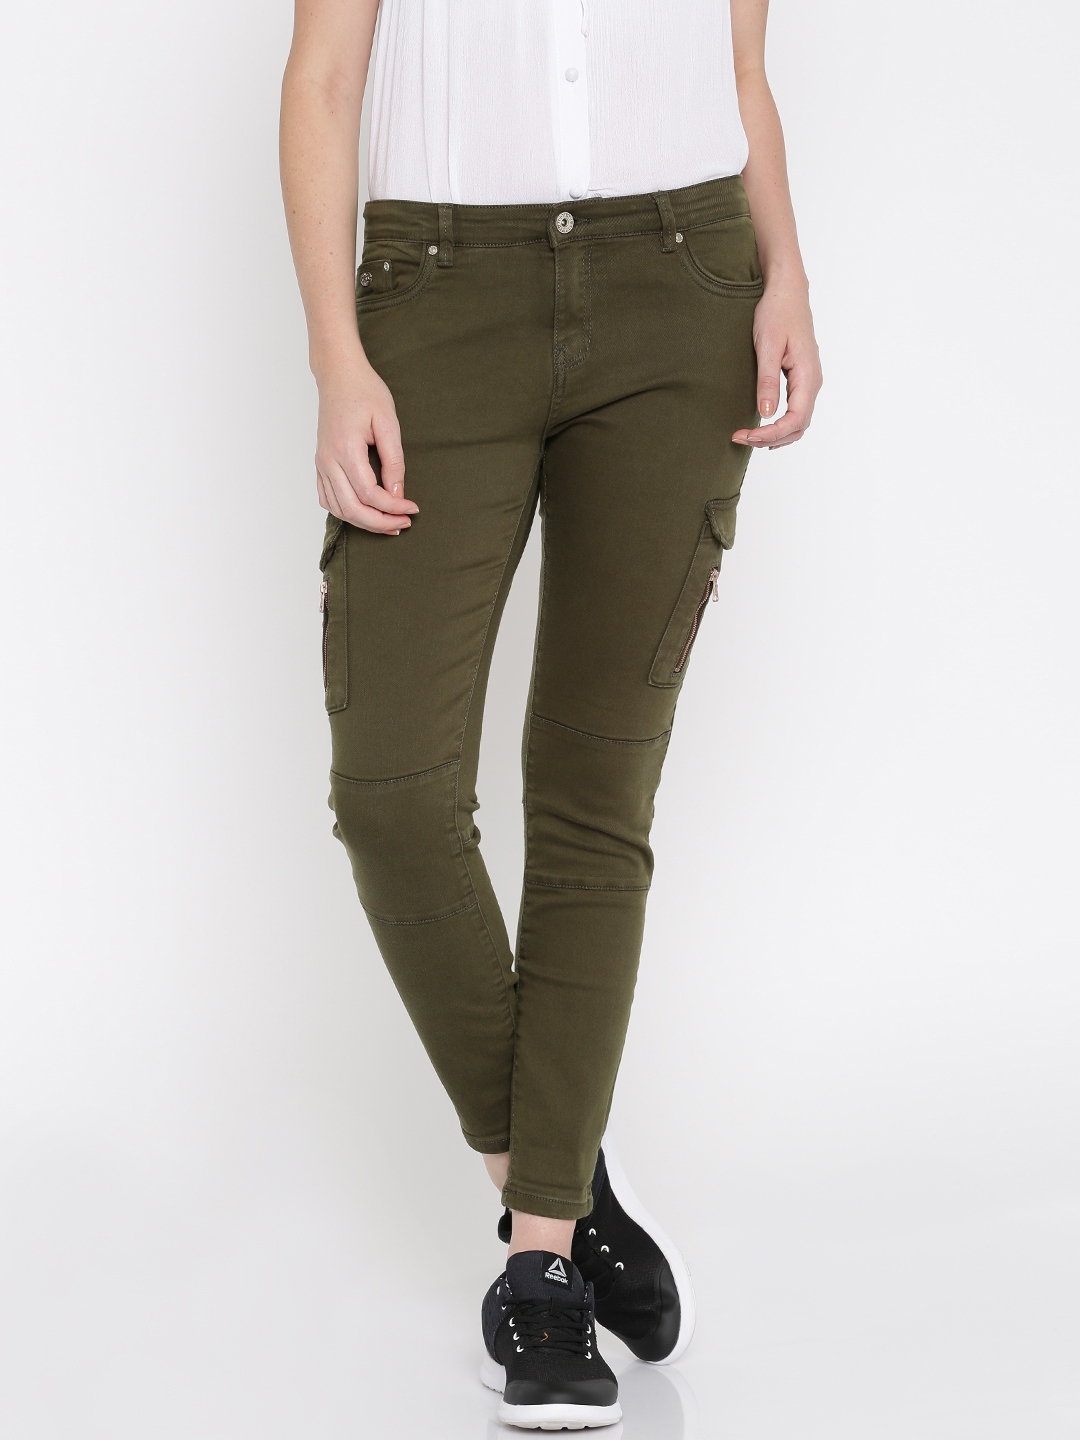 Ladies Cargo Trousers Skinny Stretch Womens Jeans Green khaki 6 8 10 12 14   eBay